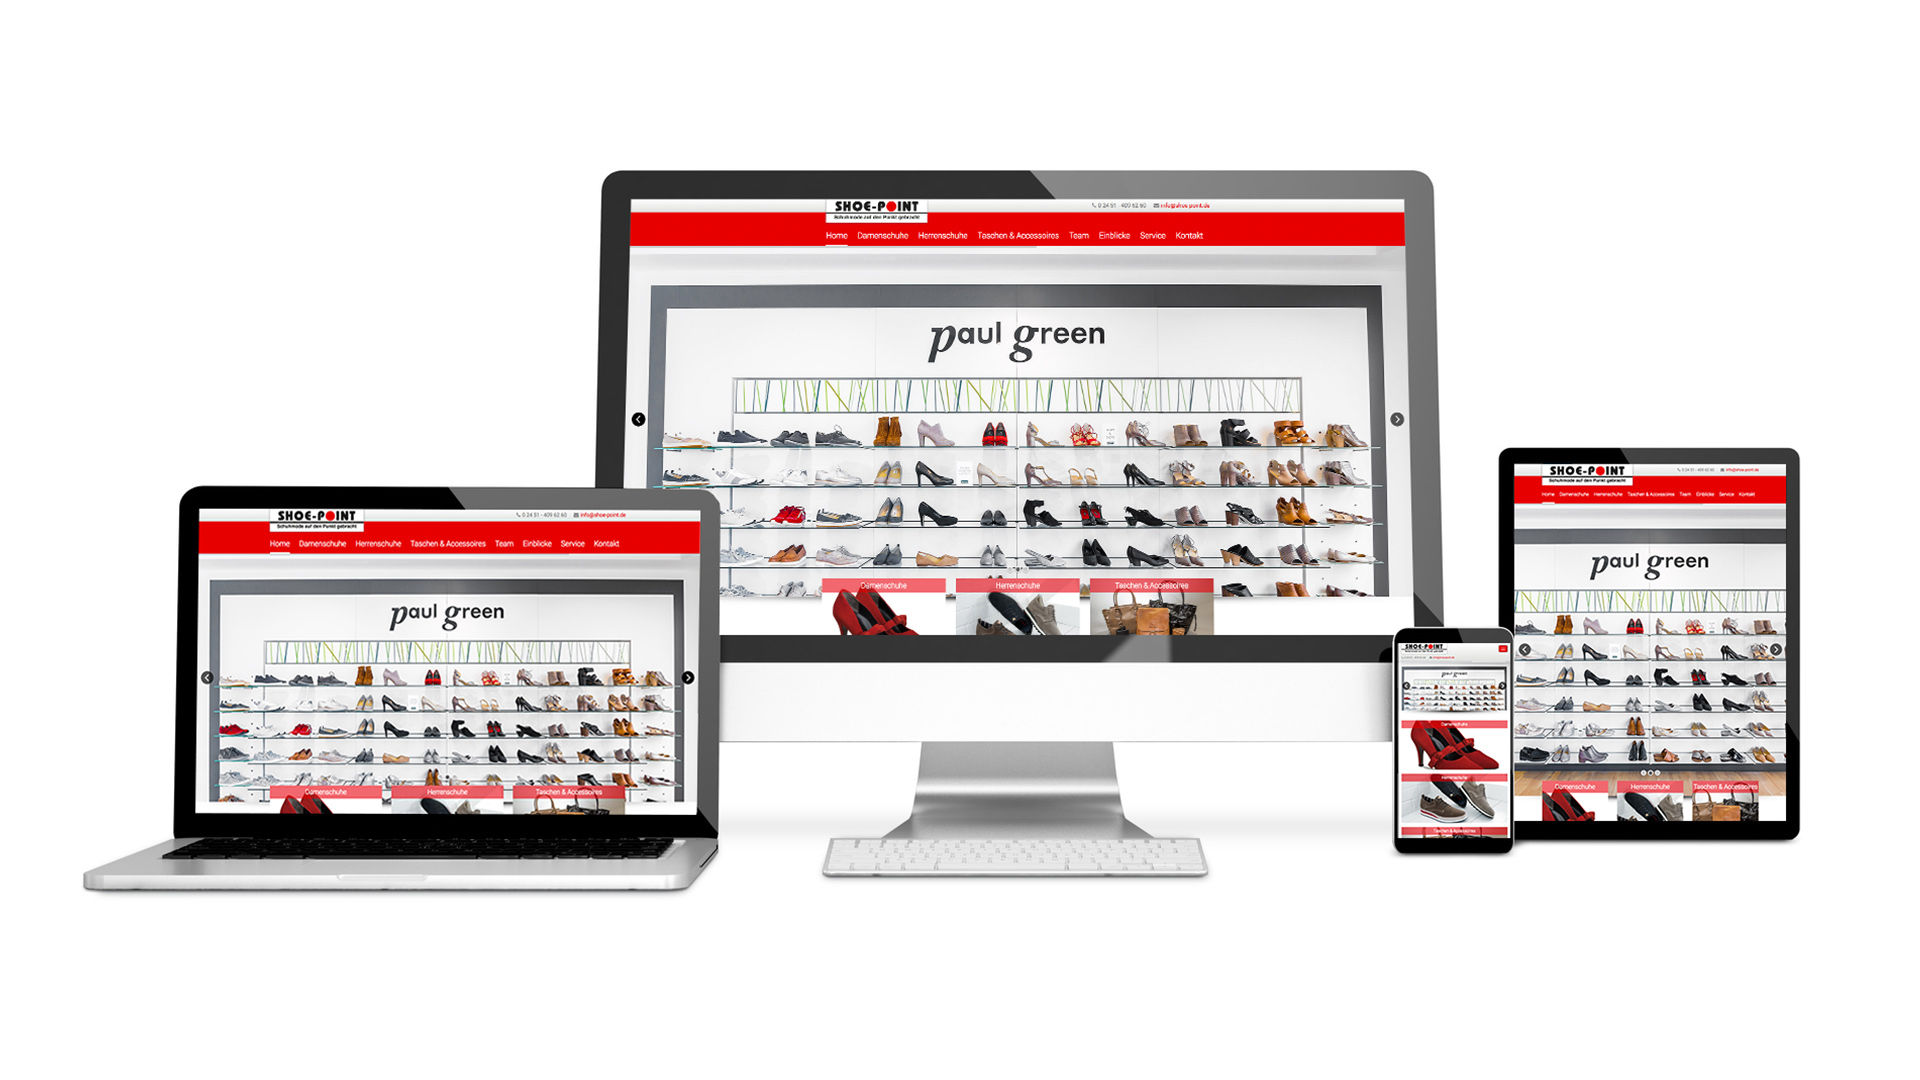 Scribble Werbeagentur in Geilenkirchen, Kreis Heinsberg, zeigt eine responsive Produkt-Website.